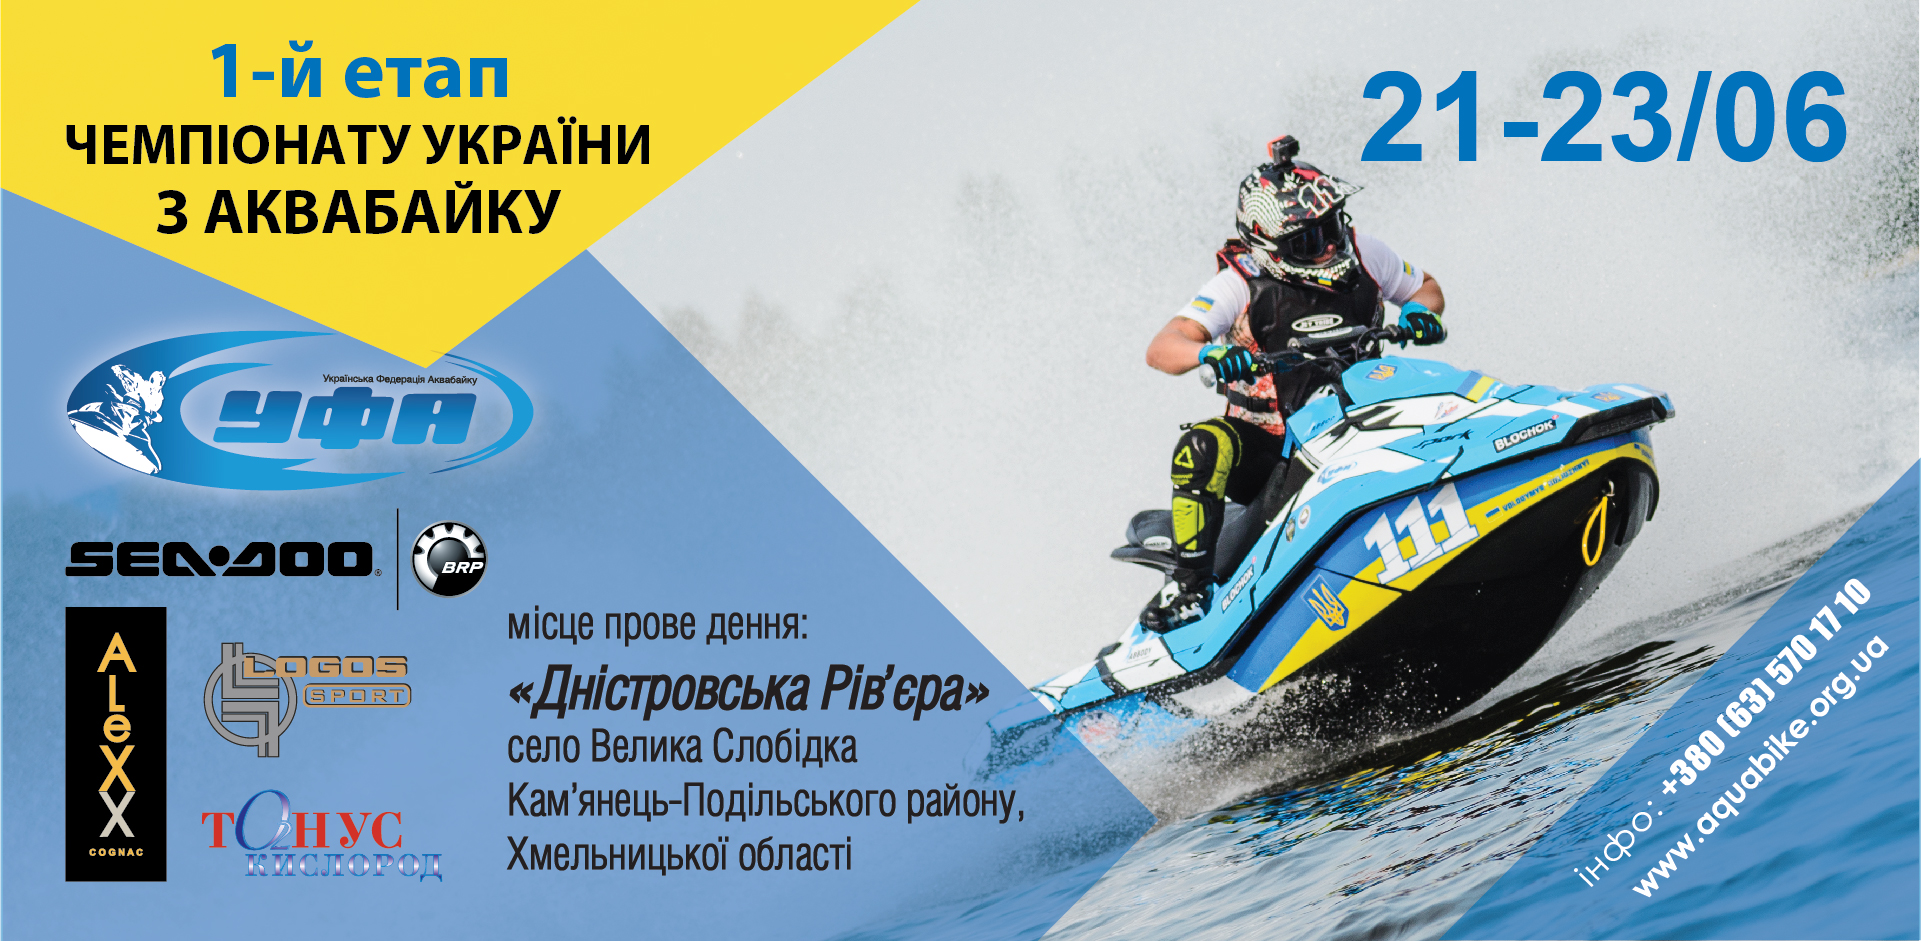 21-23.06.2019 – 1-й етап Чемпіонату України з Аквабайку!